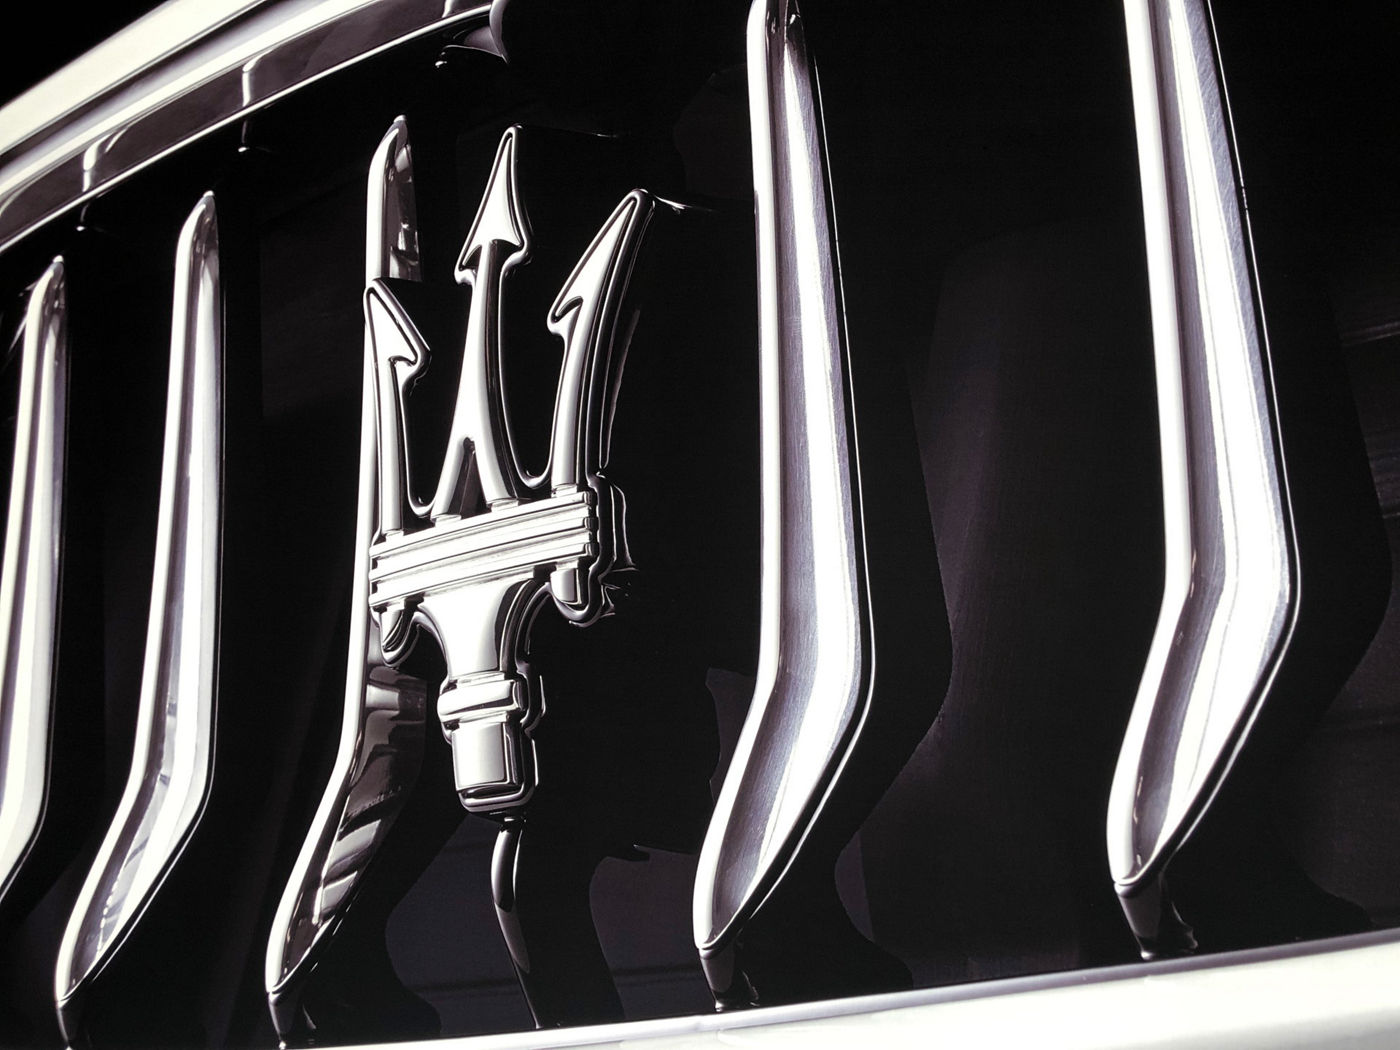 Maseratiannouncesplansforall-newmodelstobedevelopedelectrifiedandproducedinItaly